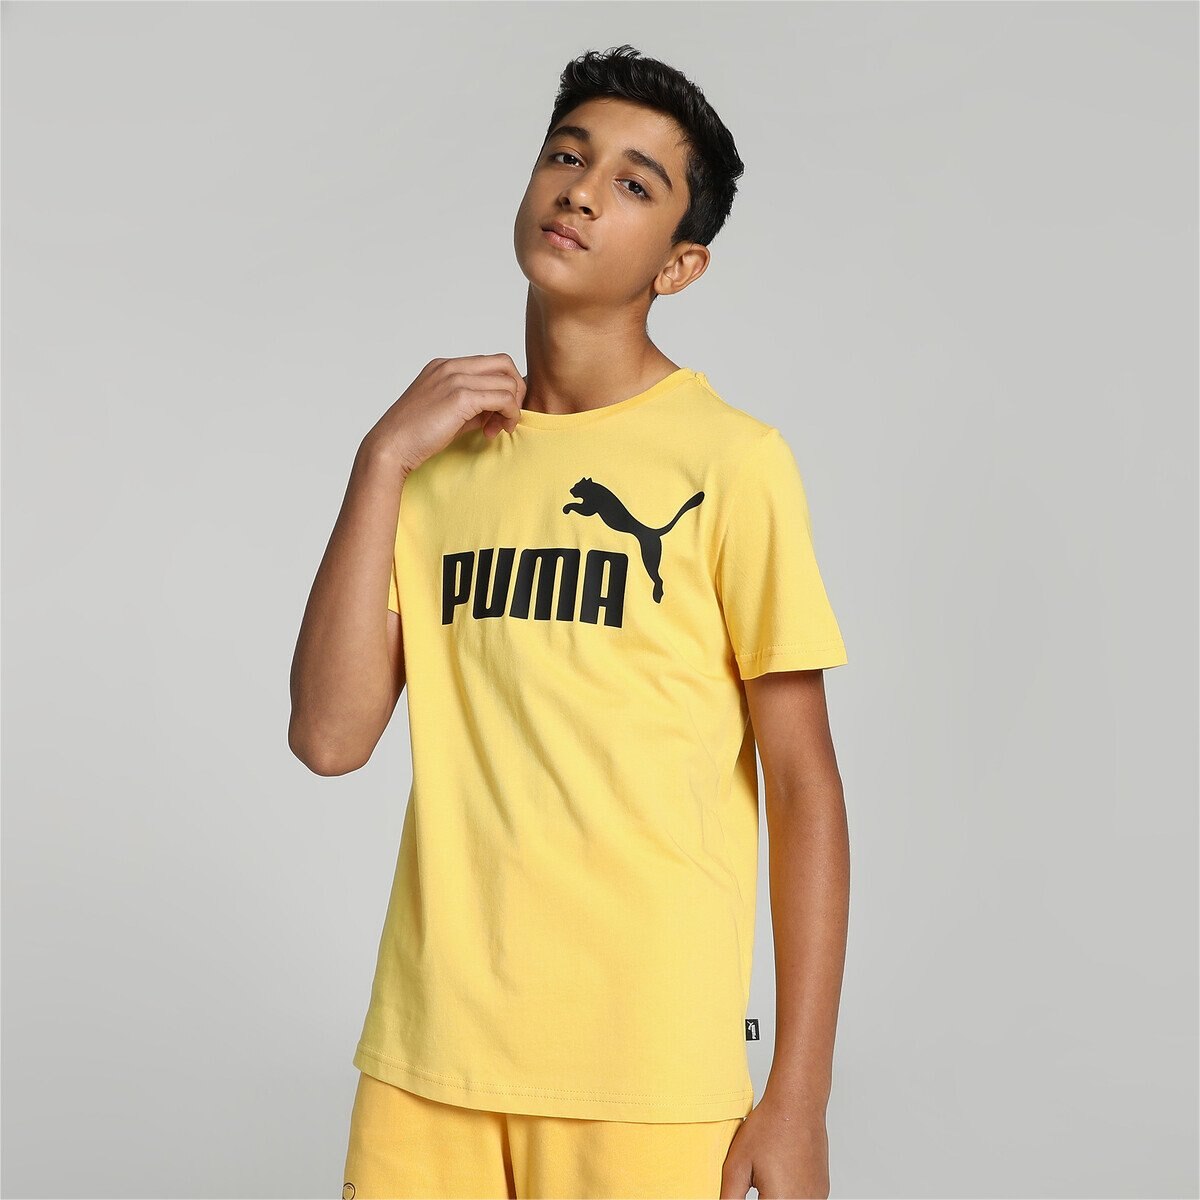 Camiseta Puma logotipo amplificado en color blanco ✓ moda urbana